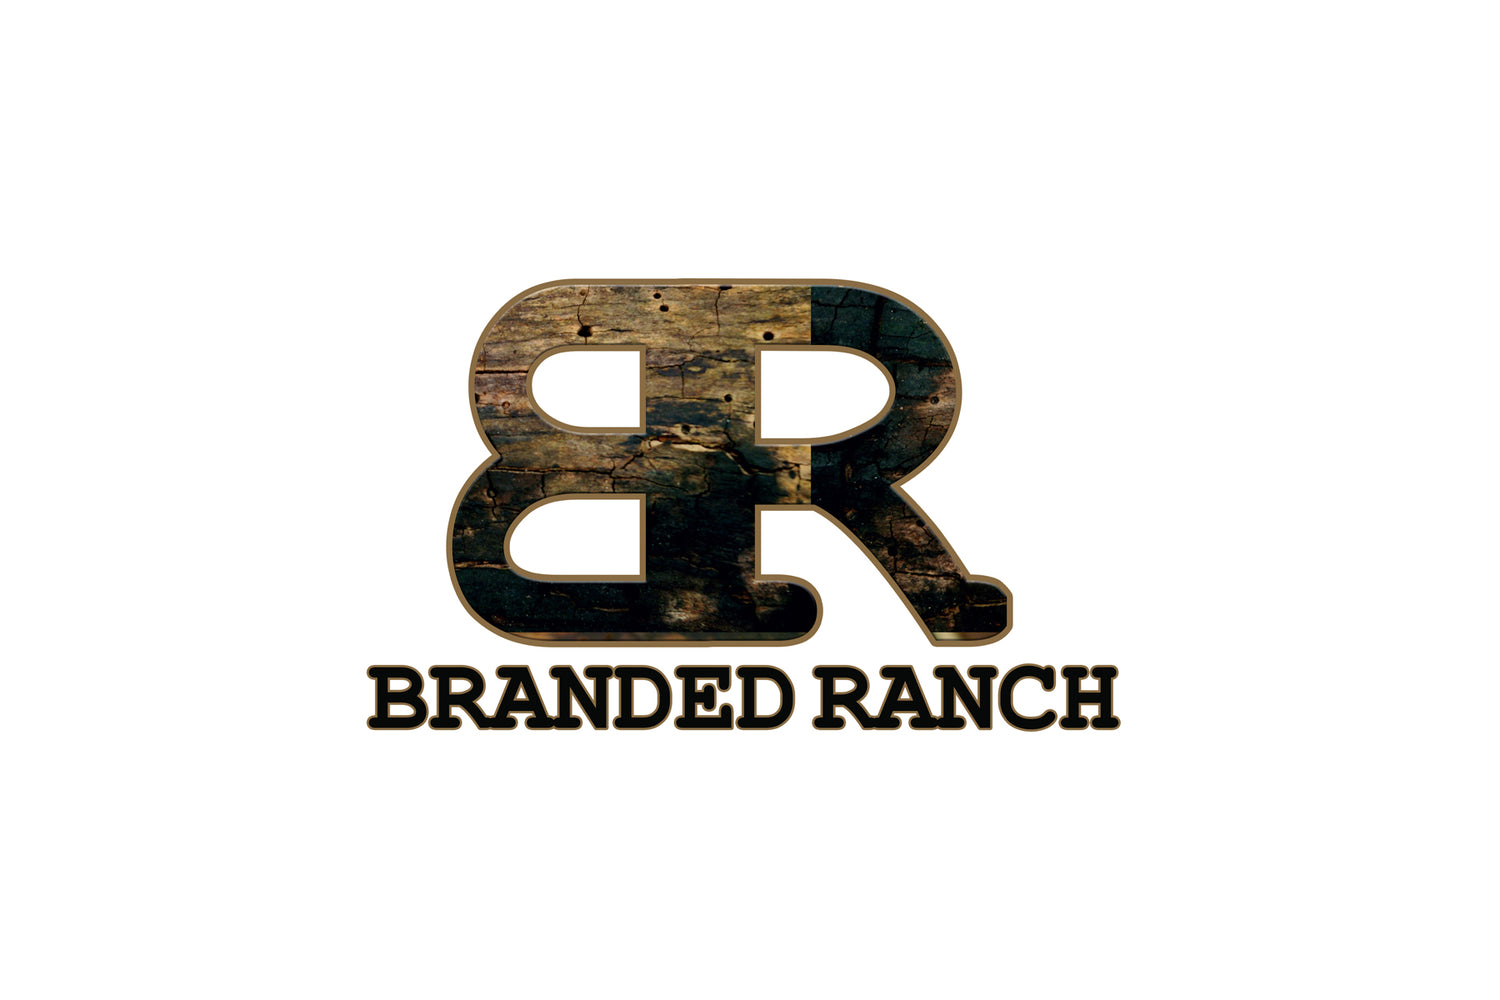 Ranch Brand 